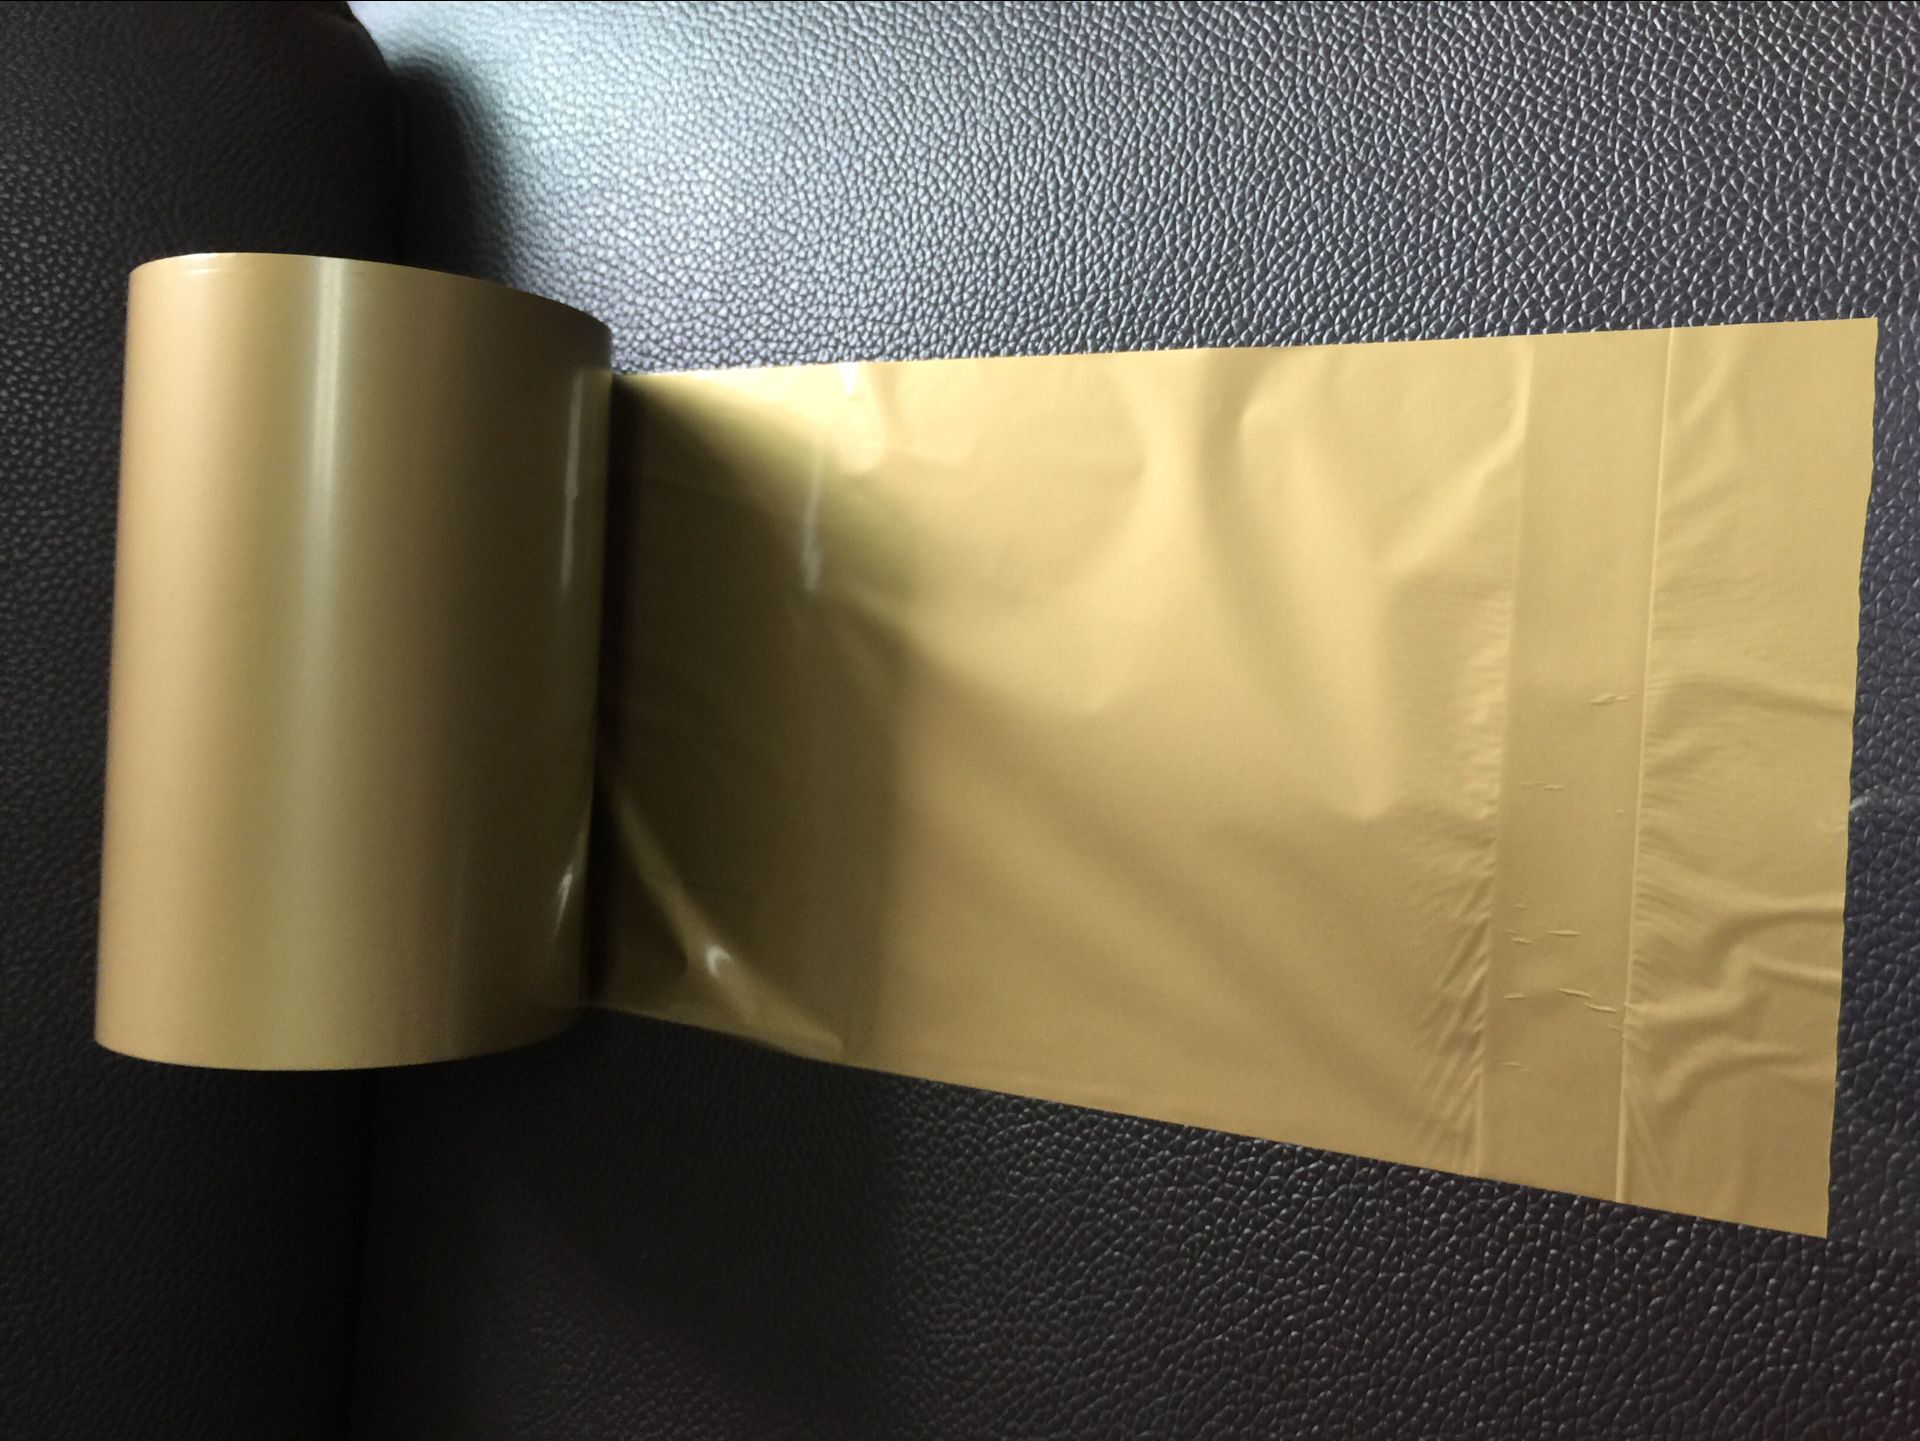 深圳市彩色碳带黄色特殊树脂条码标签打印厂家供应用于的彩色碳带黄色特殊树脂条码标签打印机110mm*300m